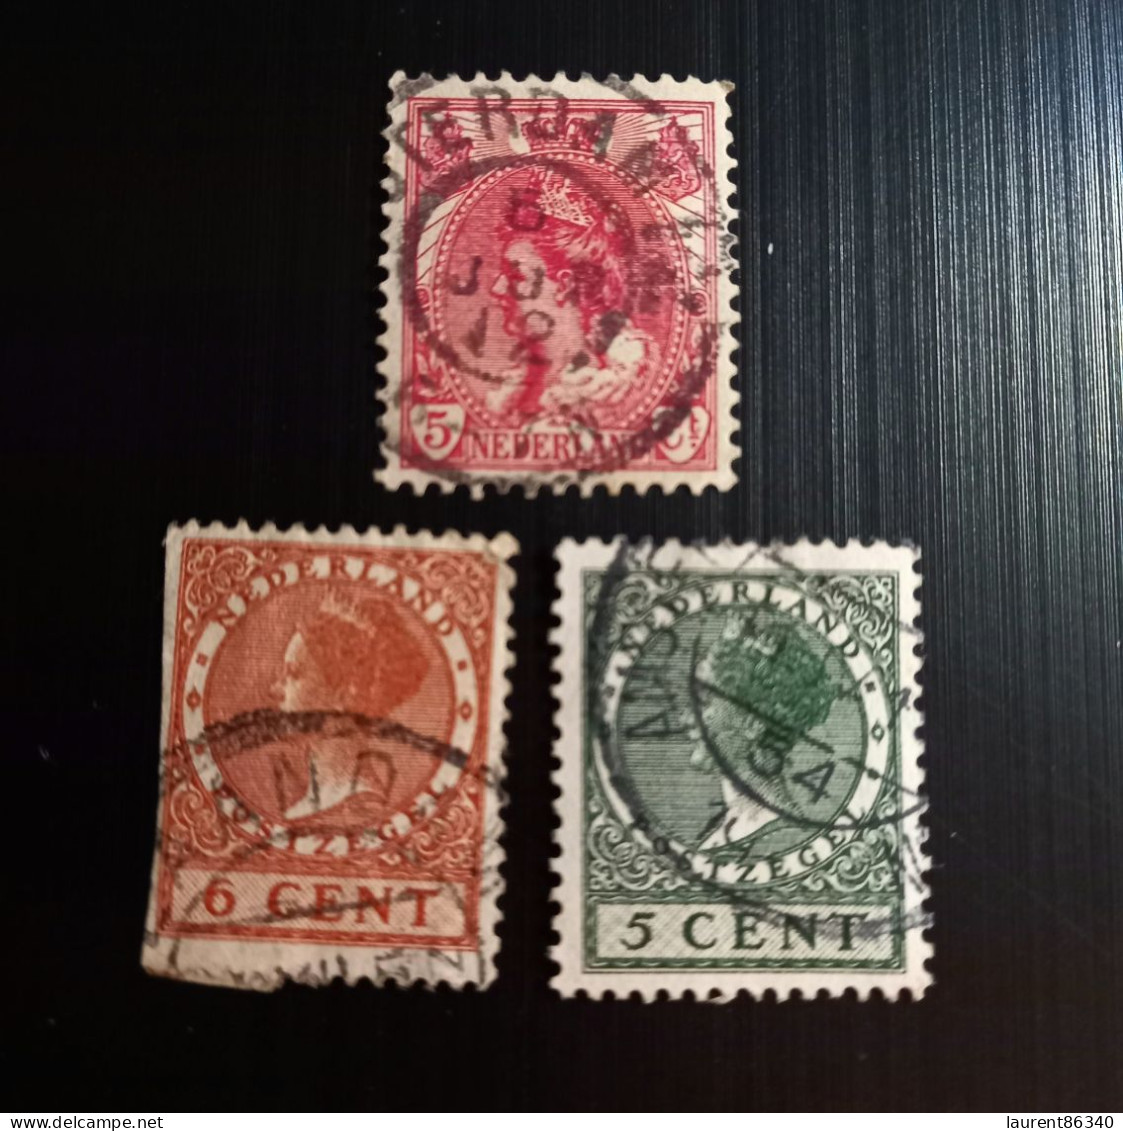 Pays Bas 1899 Queen Wilhelmina & 1924 -1925 Queen Wilhelmina - No Watermark Lot 2 - Used Stamps